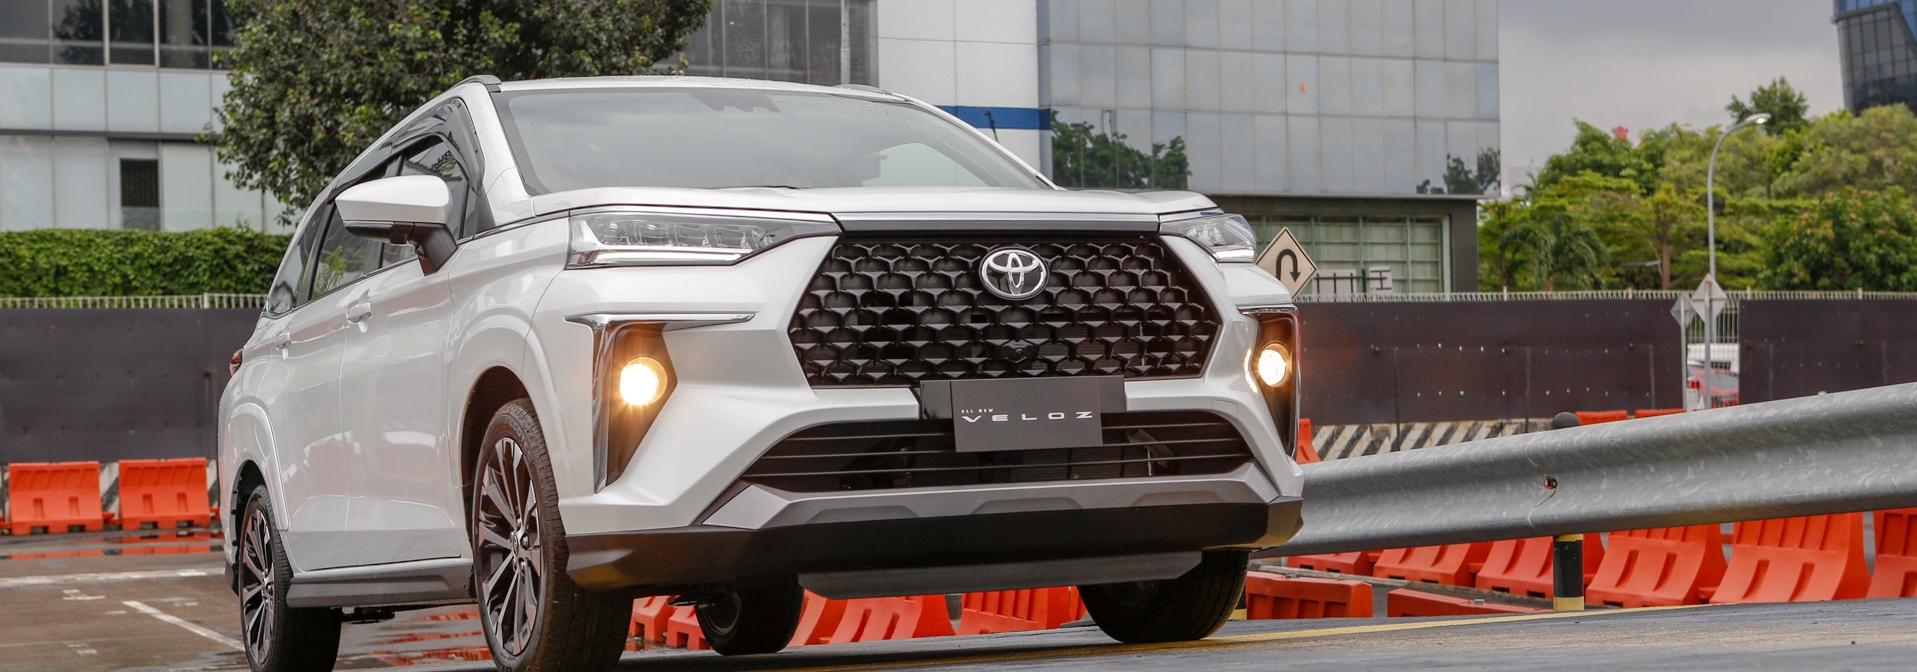 50 Tahun Toyota di Indonesia: World Premiere of All New Veloz  Toyota All New Veloz  MPV Premium Kompak Baru Penuh Fitur Canggih Untuk Perjalanan Keluarga yang Stylish